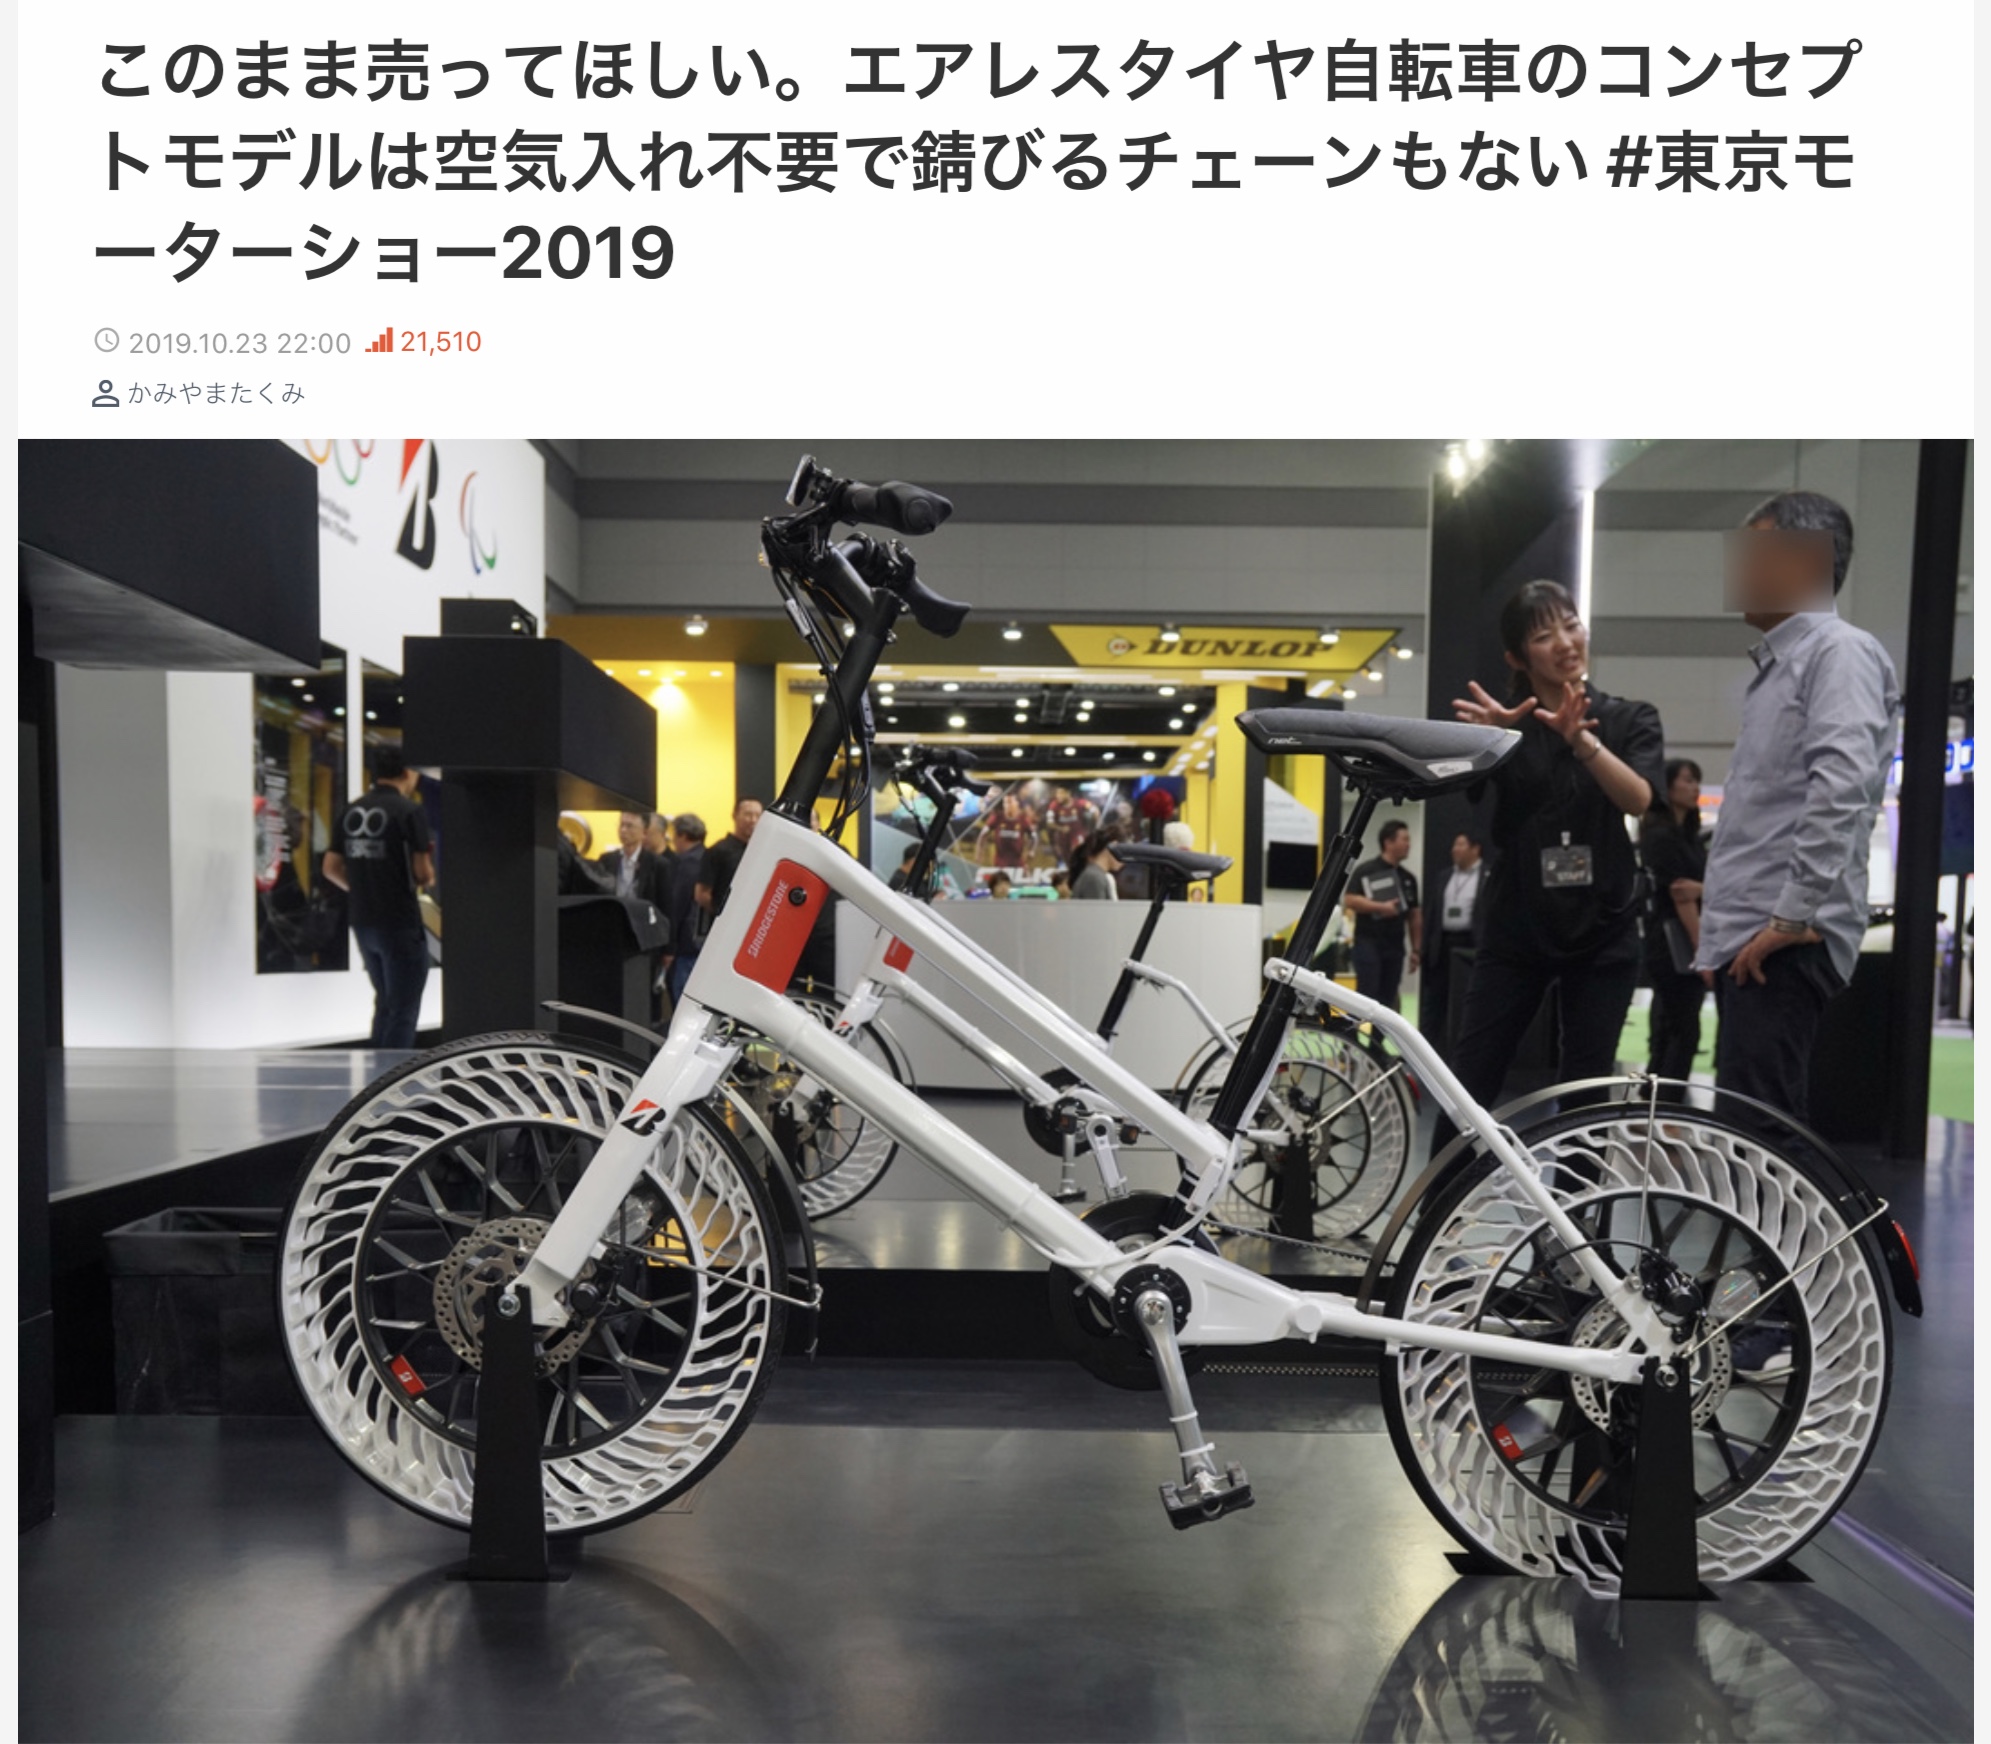 エアレス自転車のコンセプトモデル